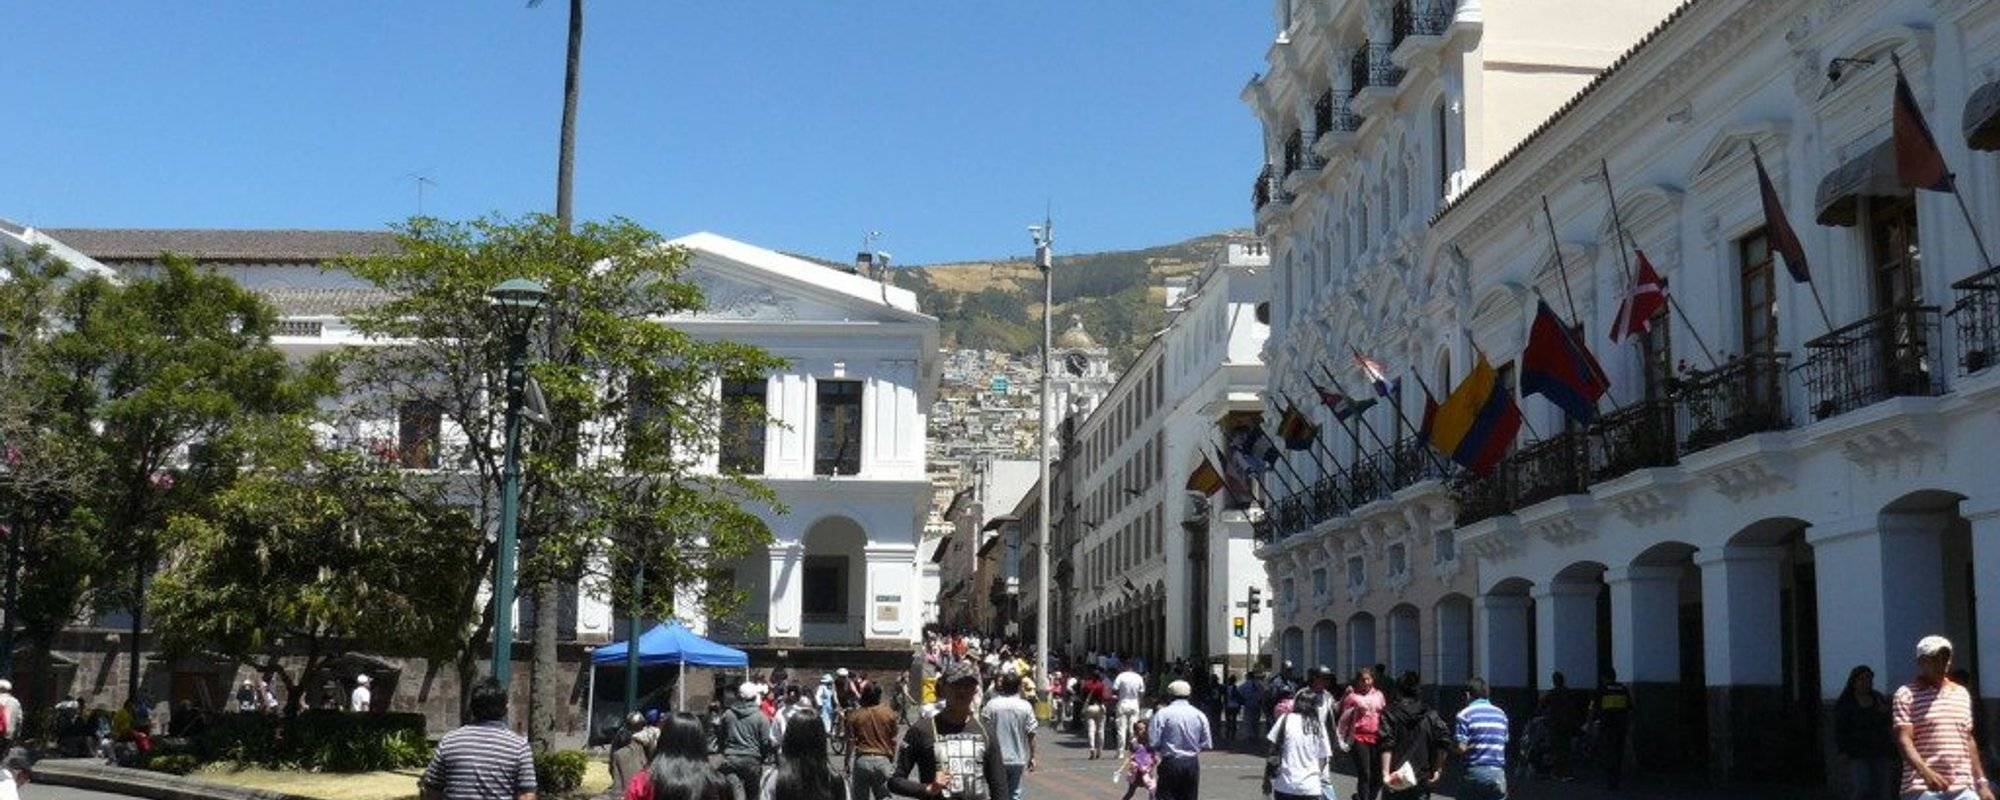 ECUADOR SERIES: QUITO'S OLD TOWN